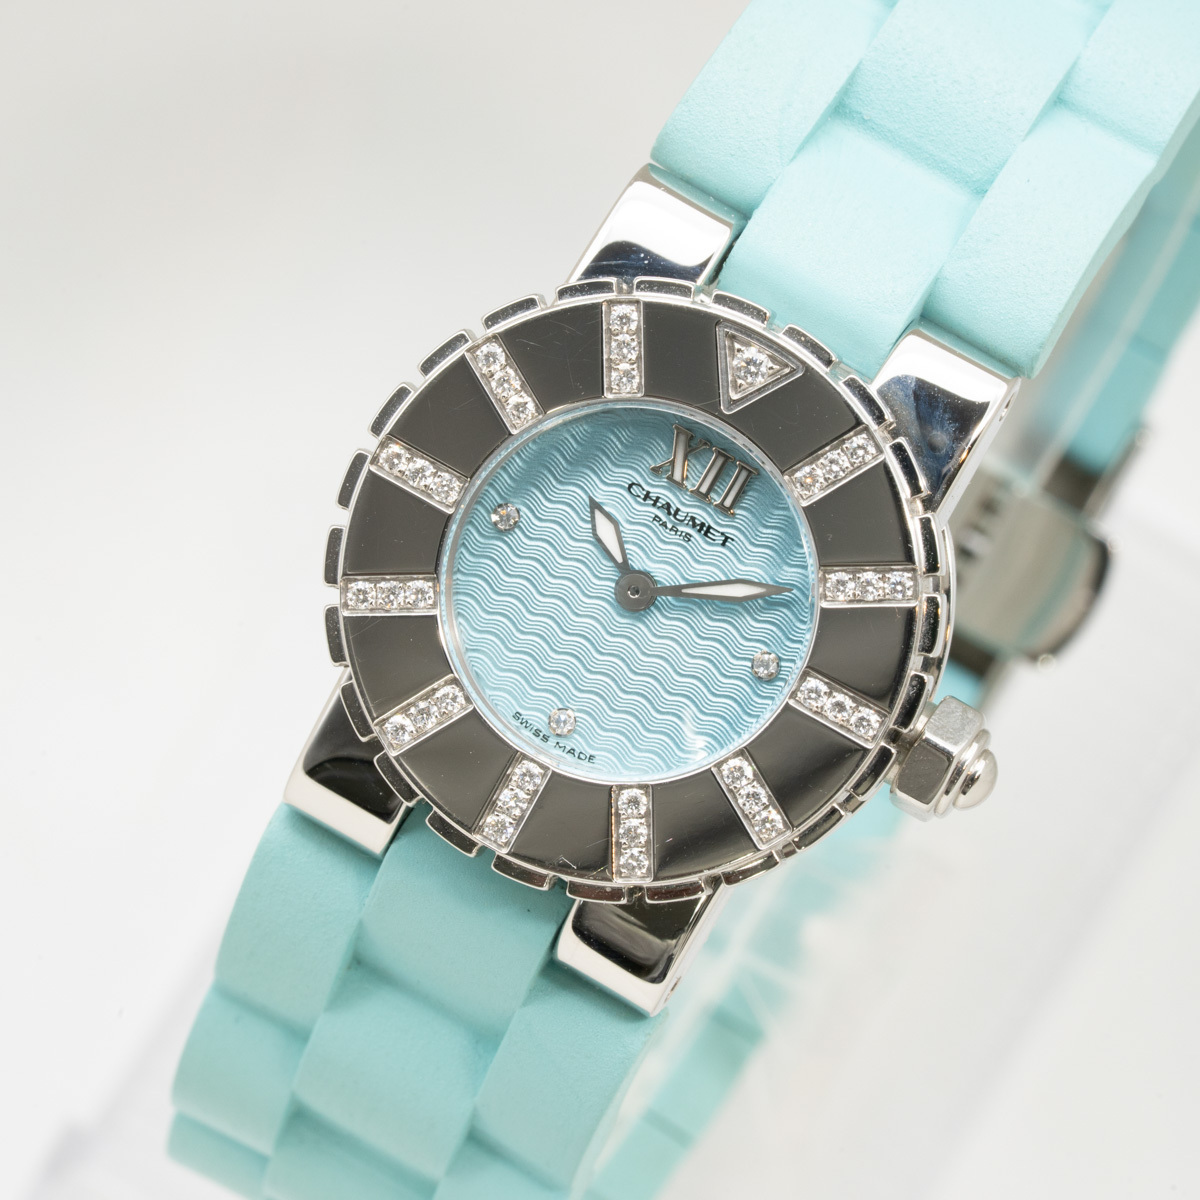 31％割引新品 質イコー [ショーメ] CHAUMET 腕時計 クラスワン ダイヤベゼル ブルー ラバー 621-2126 レディース 中古美品 さ行  ブランド腕時計 アクセサリー、時計-MBIS.CA